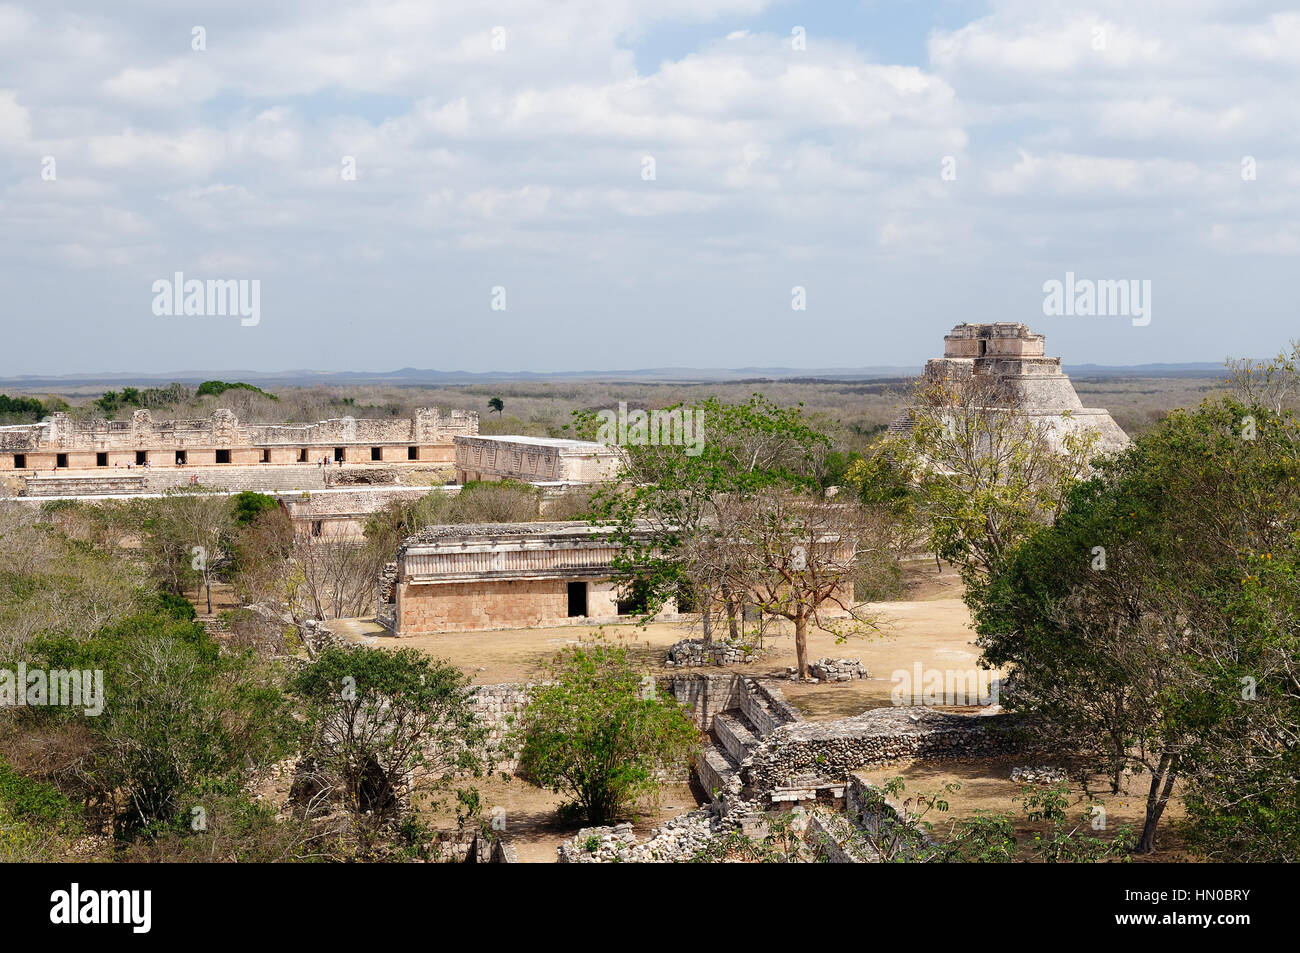 Uxmal Maya-Ruinen ist die archäologische Stätte von größter Relevanz in der Puuc-Route. Bekannt für die schöne Friese seiner Gebäude-Fassaden, crea Stockfoto